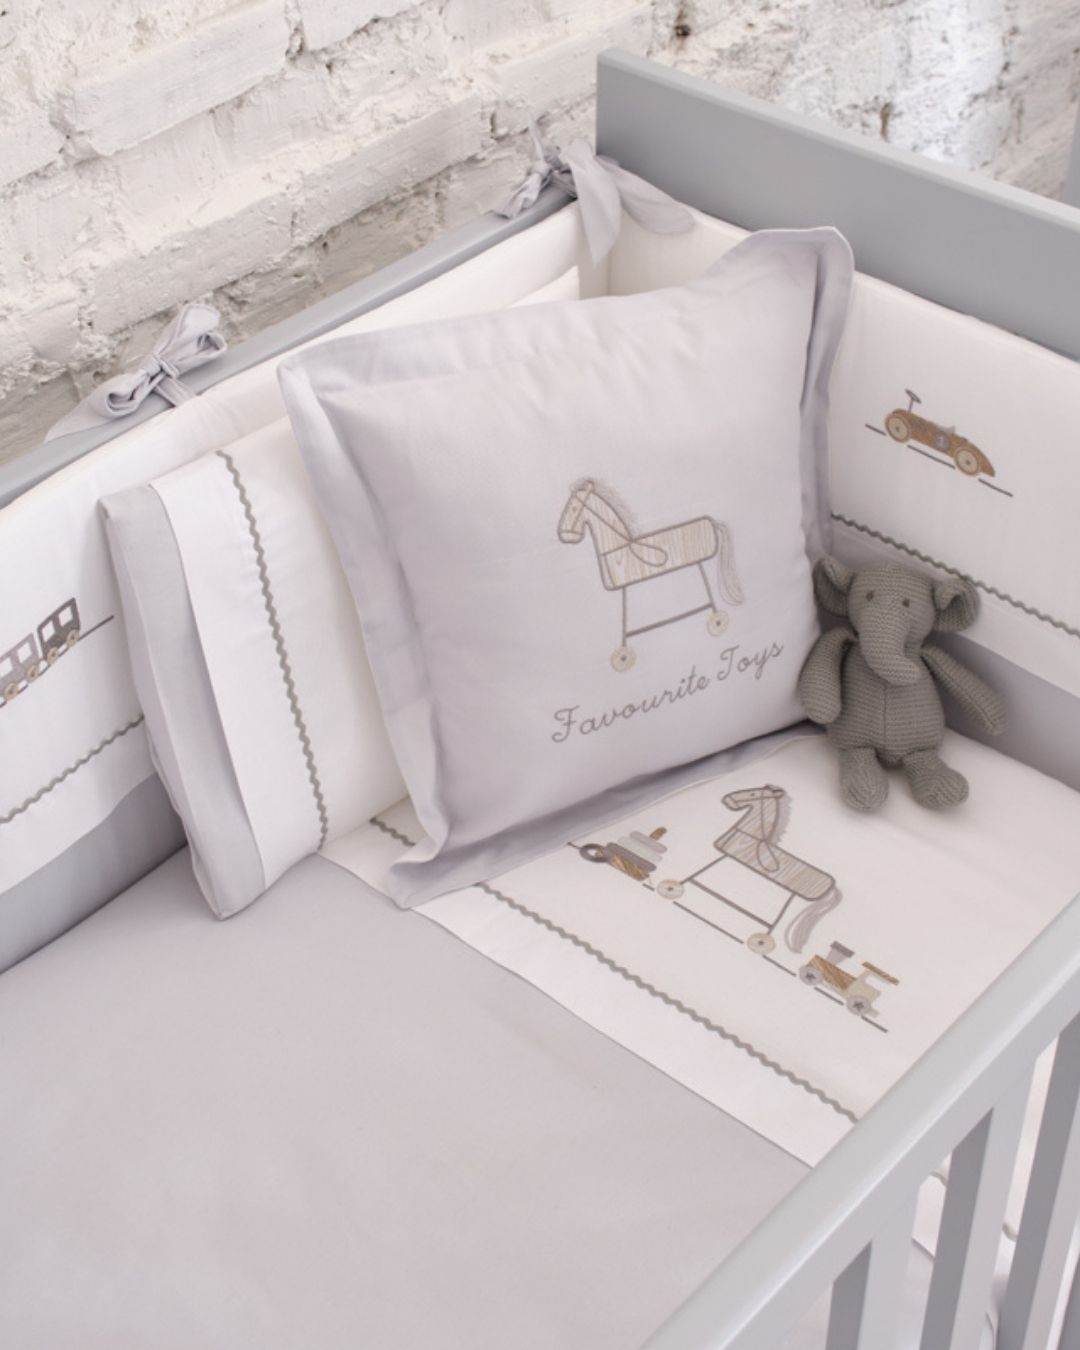 posteljina za bebe set od sedam delova u kombinaciji sive i bele boje sa vezenim motivom igracaka na krevecu